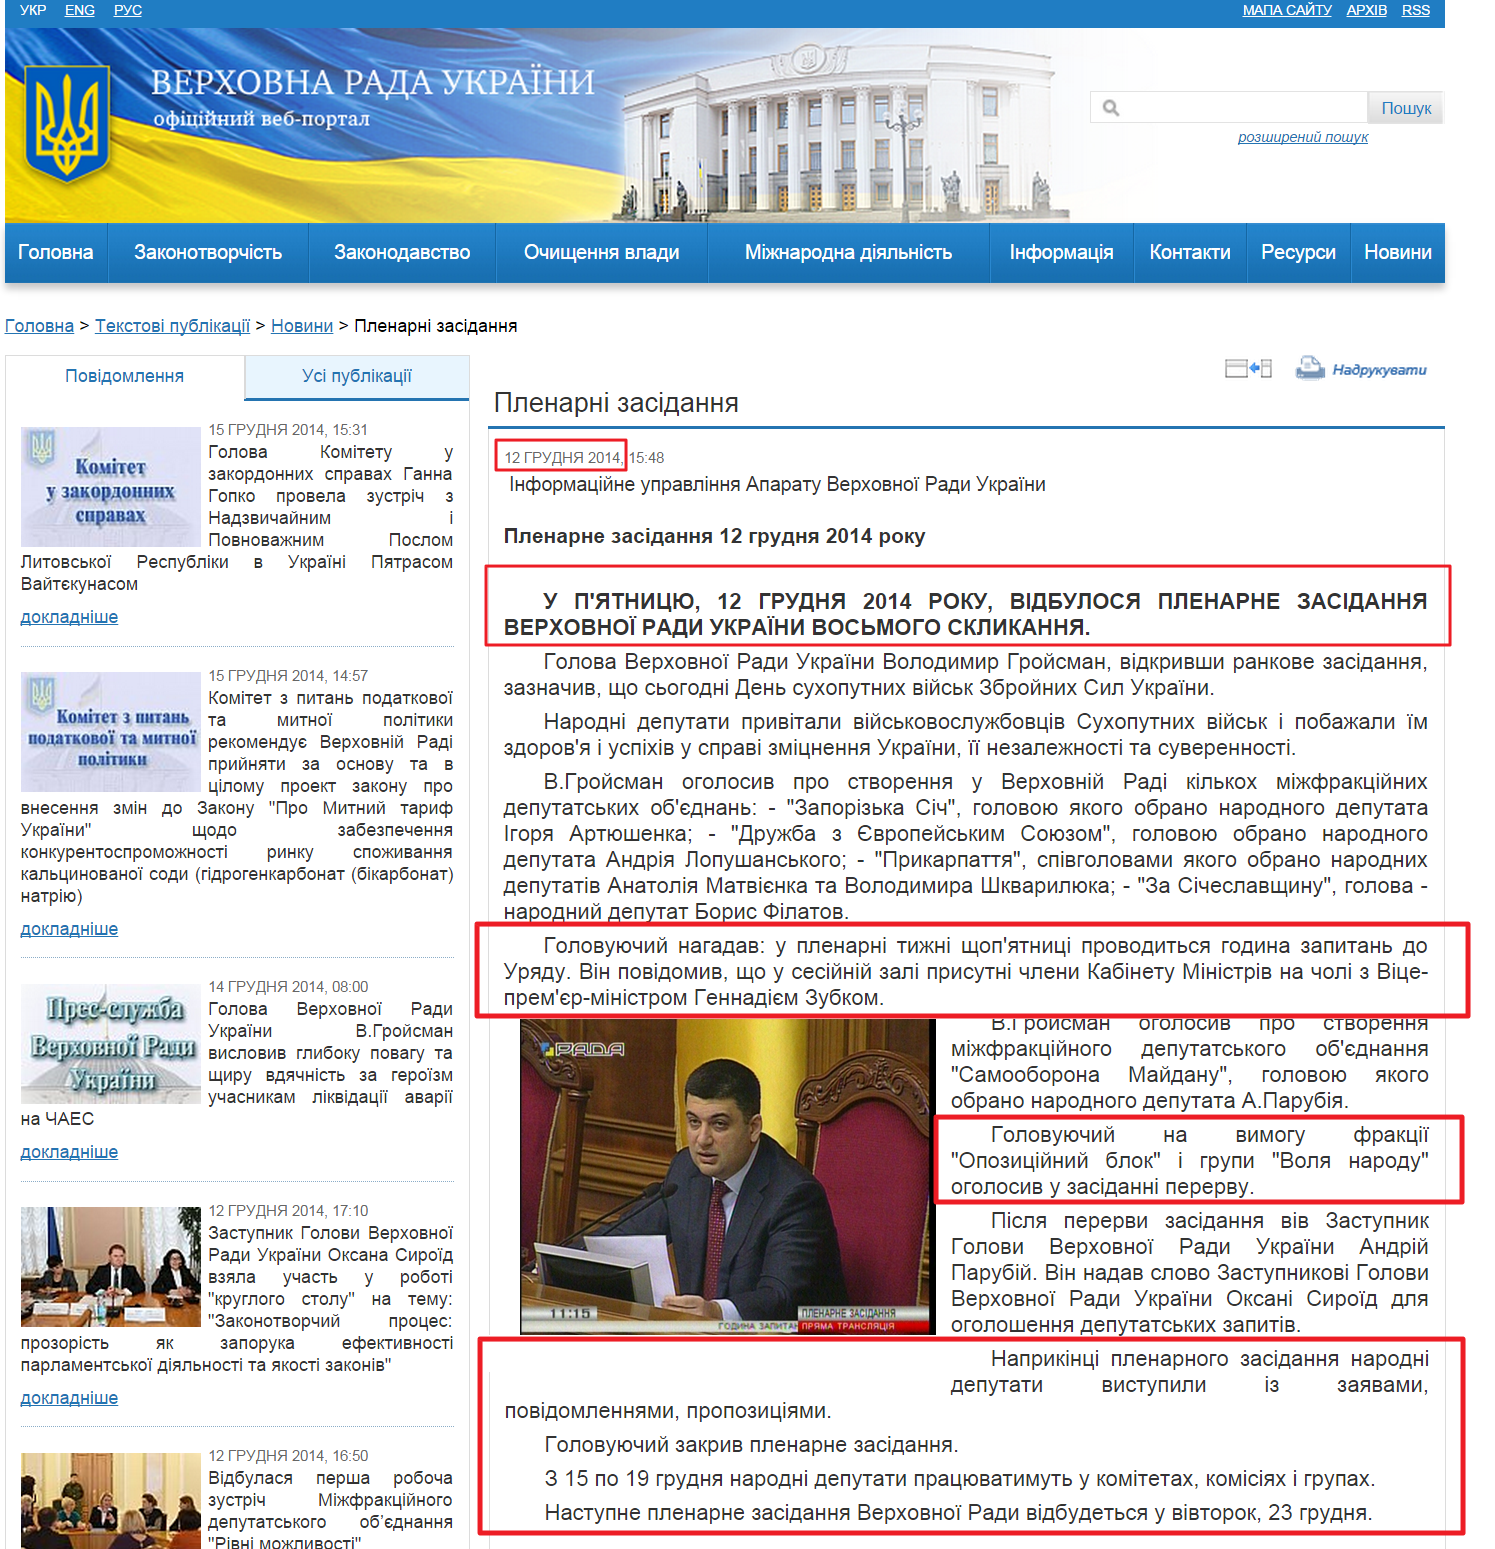 http://iportal.rada.gov.ua/news/Novyny/Plenarni_zasidannya/100151.html